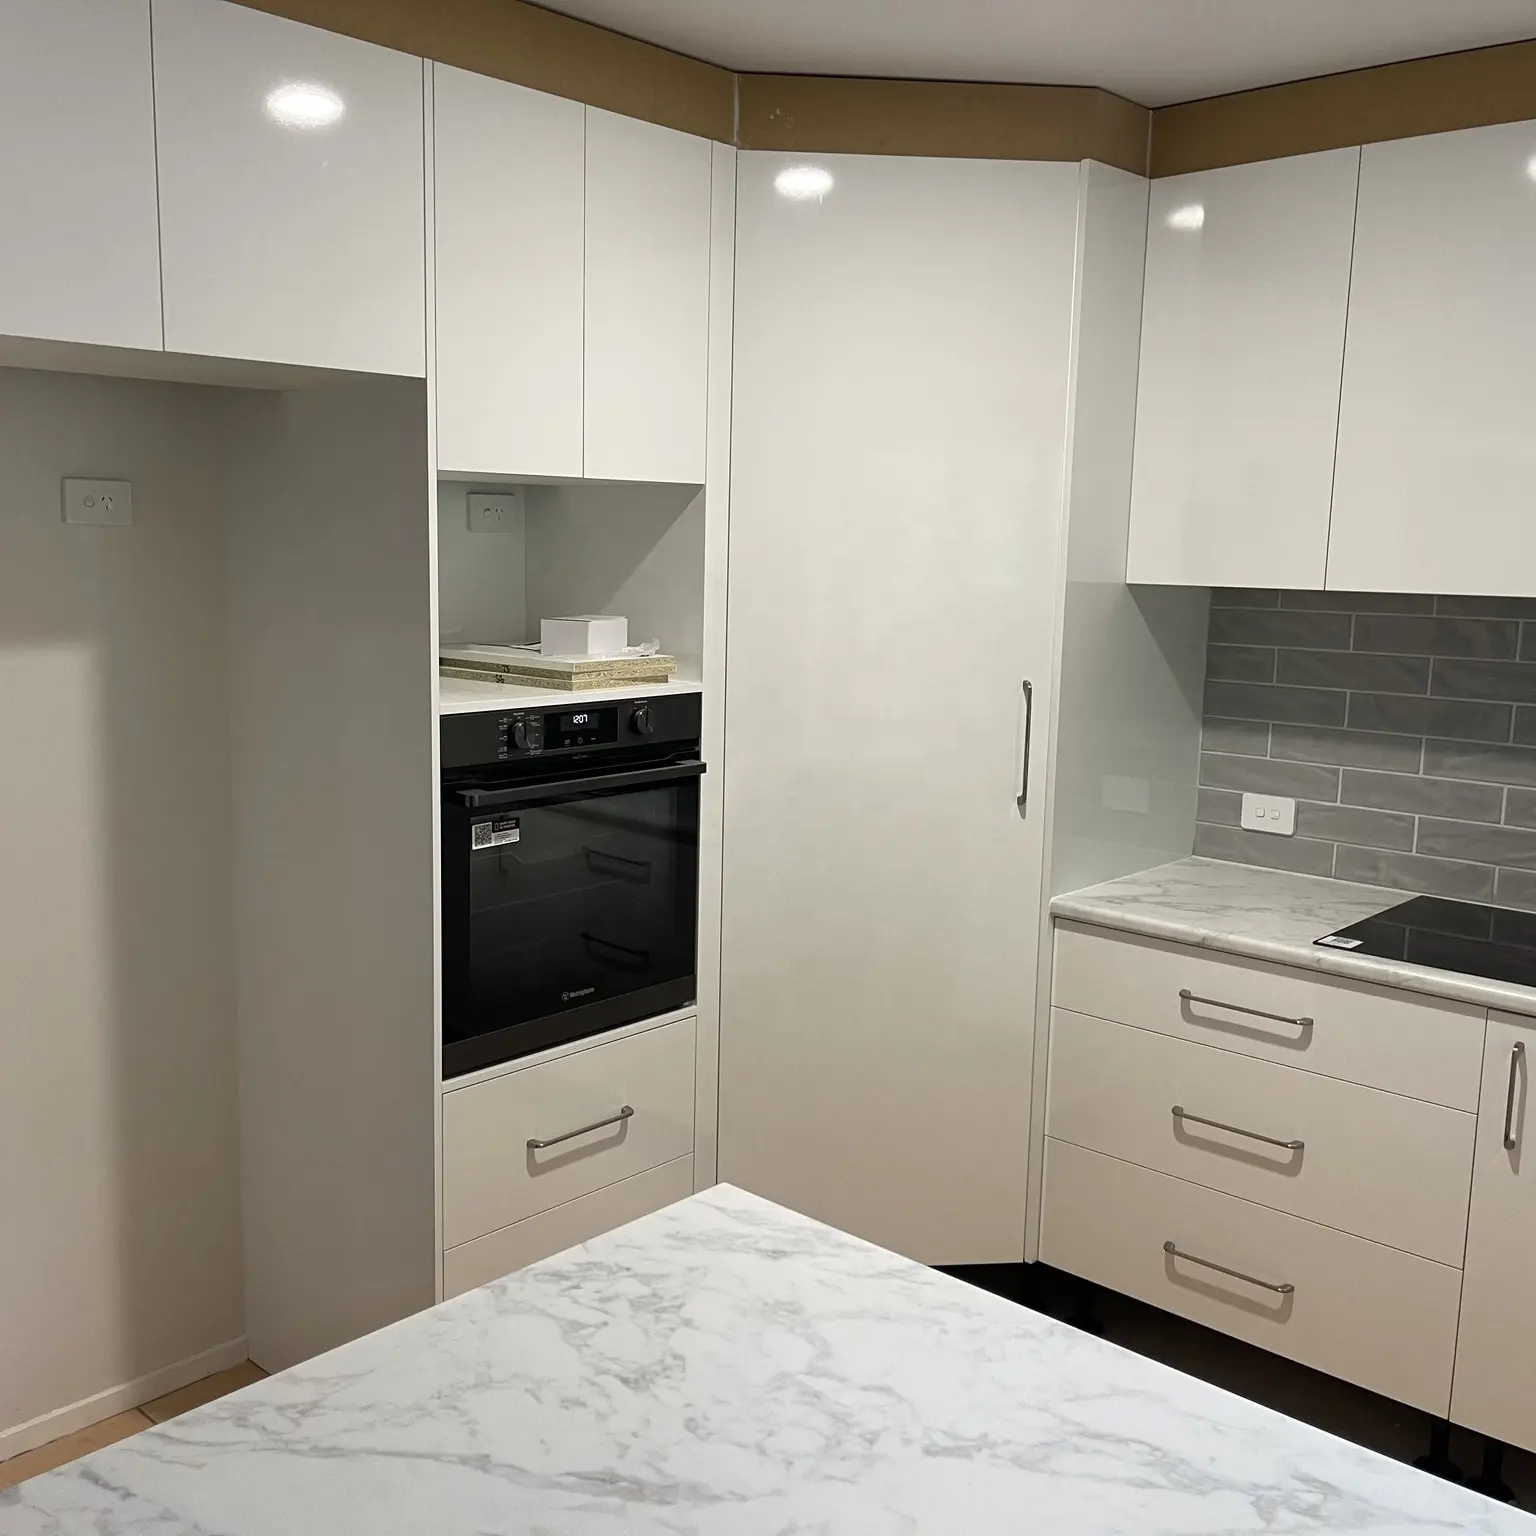 Offre Spéciale Armoire de cuisine à bas prix appartement idée de cuisine armoire blanche avec îlot